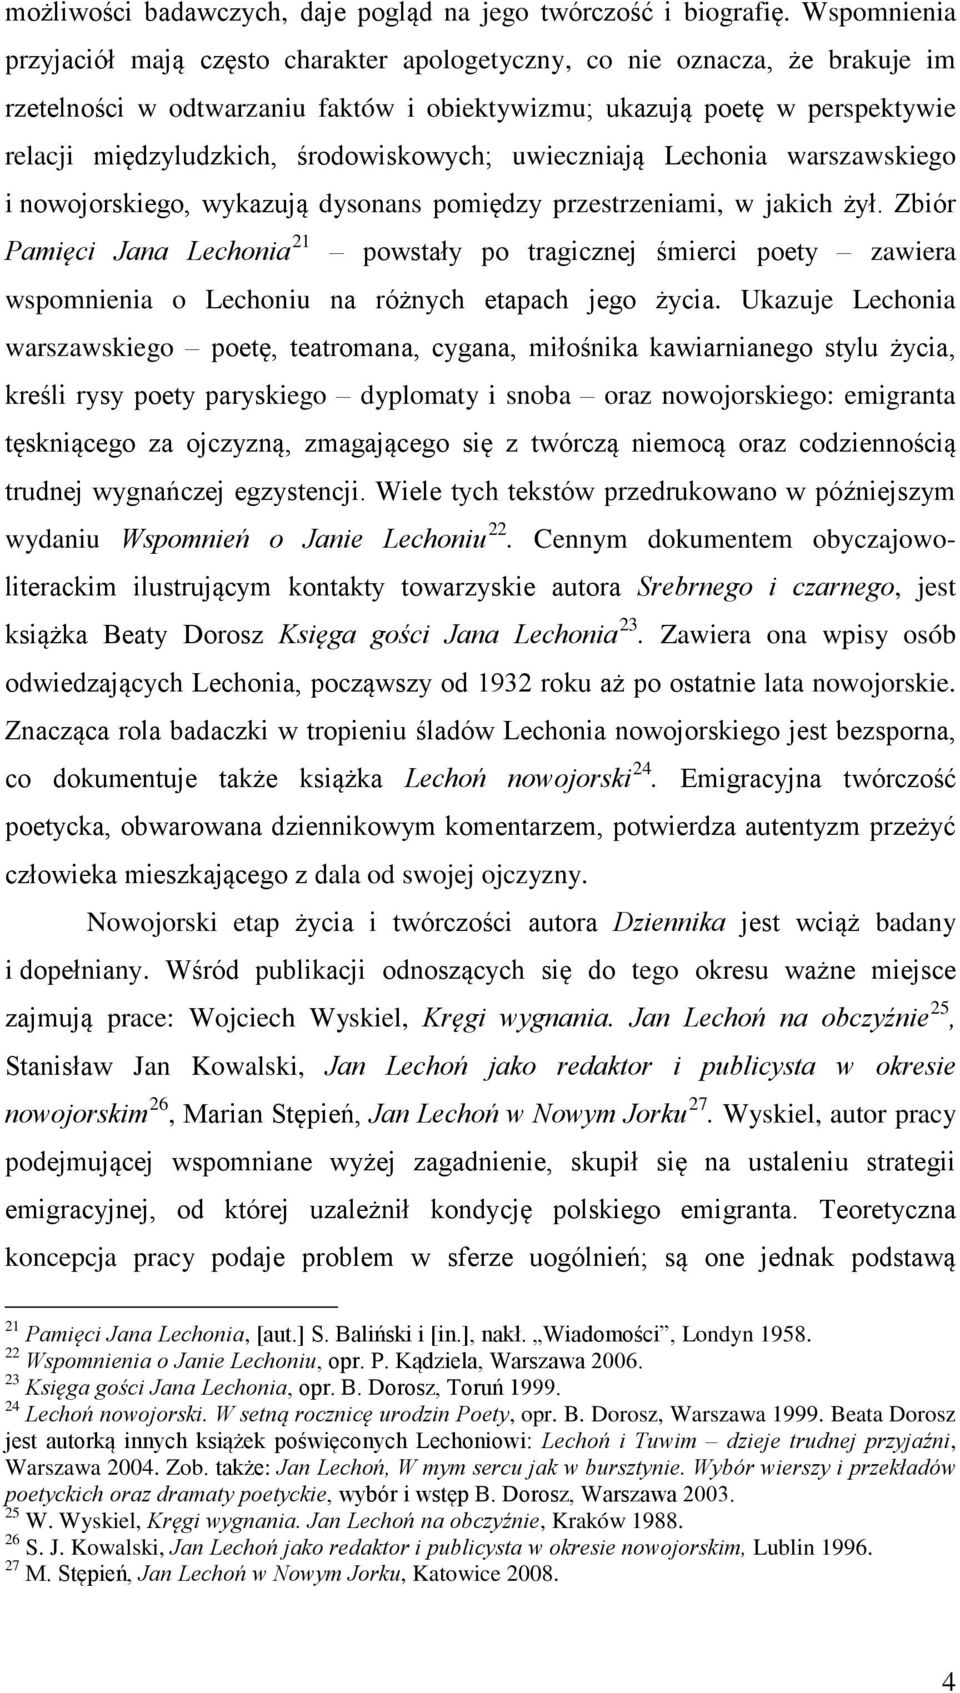 Pamięci Jana Lechonia 21 powstały po tragicznej śmierci poety zawiera wspomnienia o Lechoniu na różnych etapach jego życia Ukazuje Lechonia warszawskiego poetę, teatromana, cygana, miłośnika